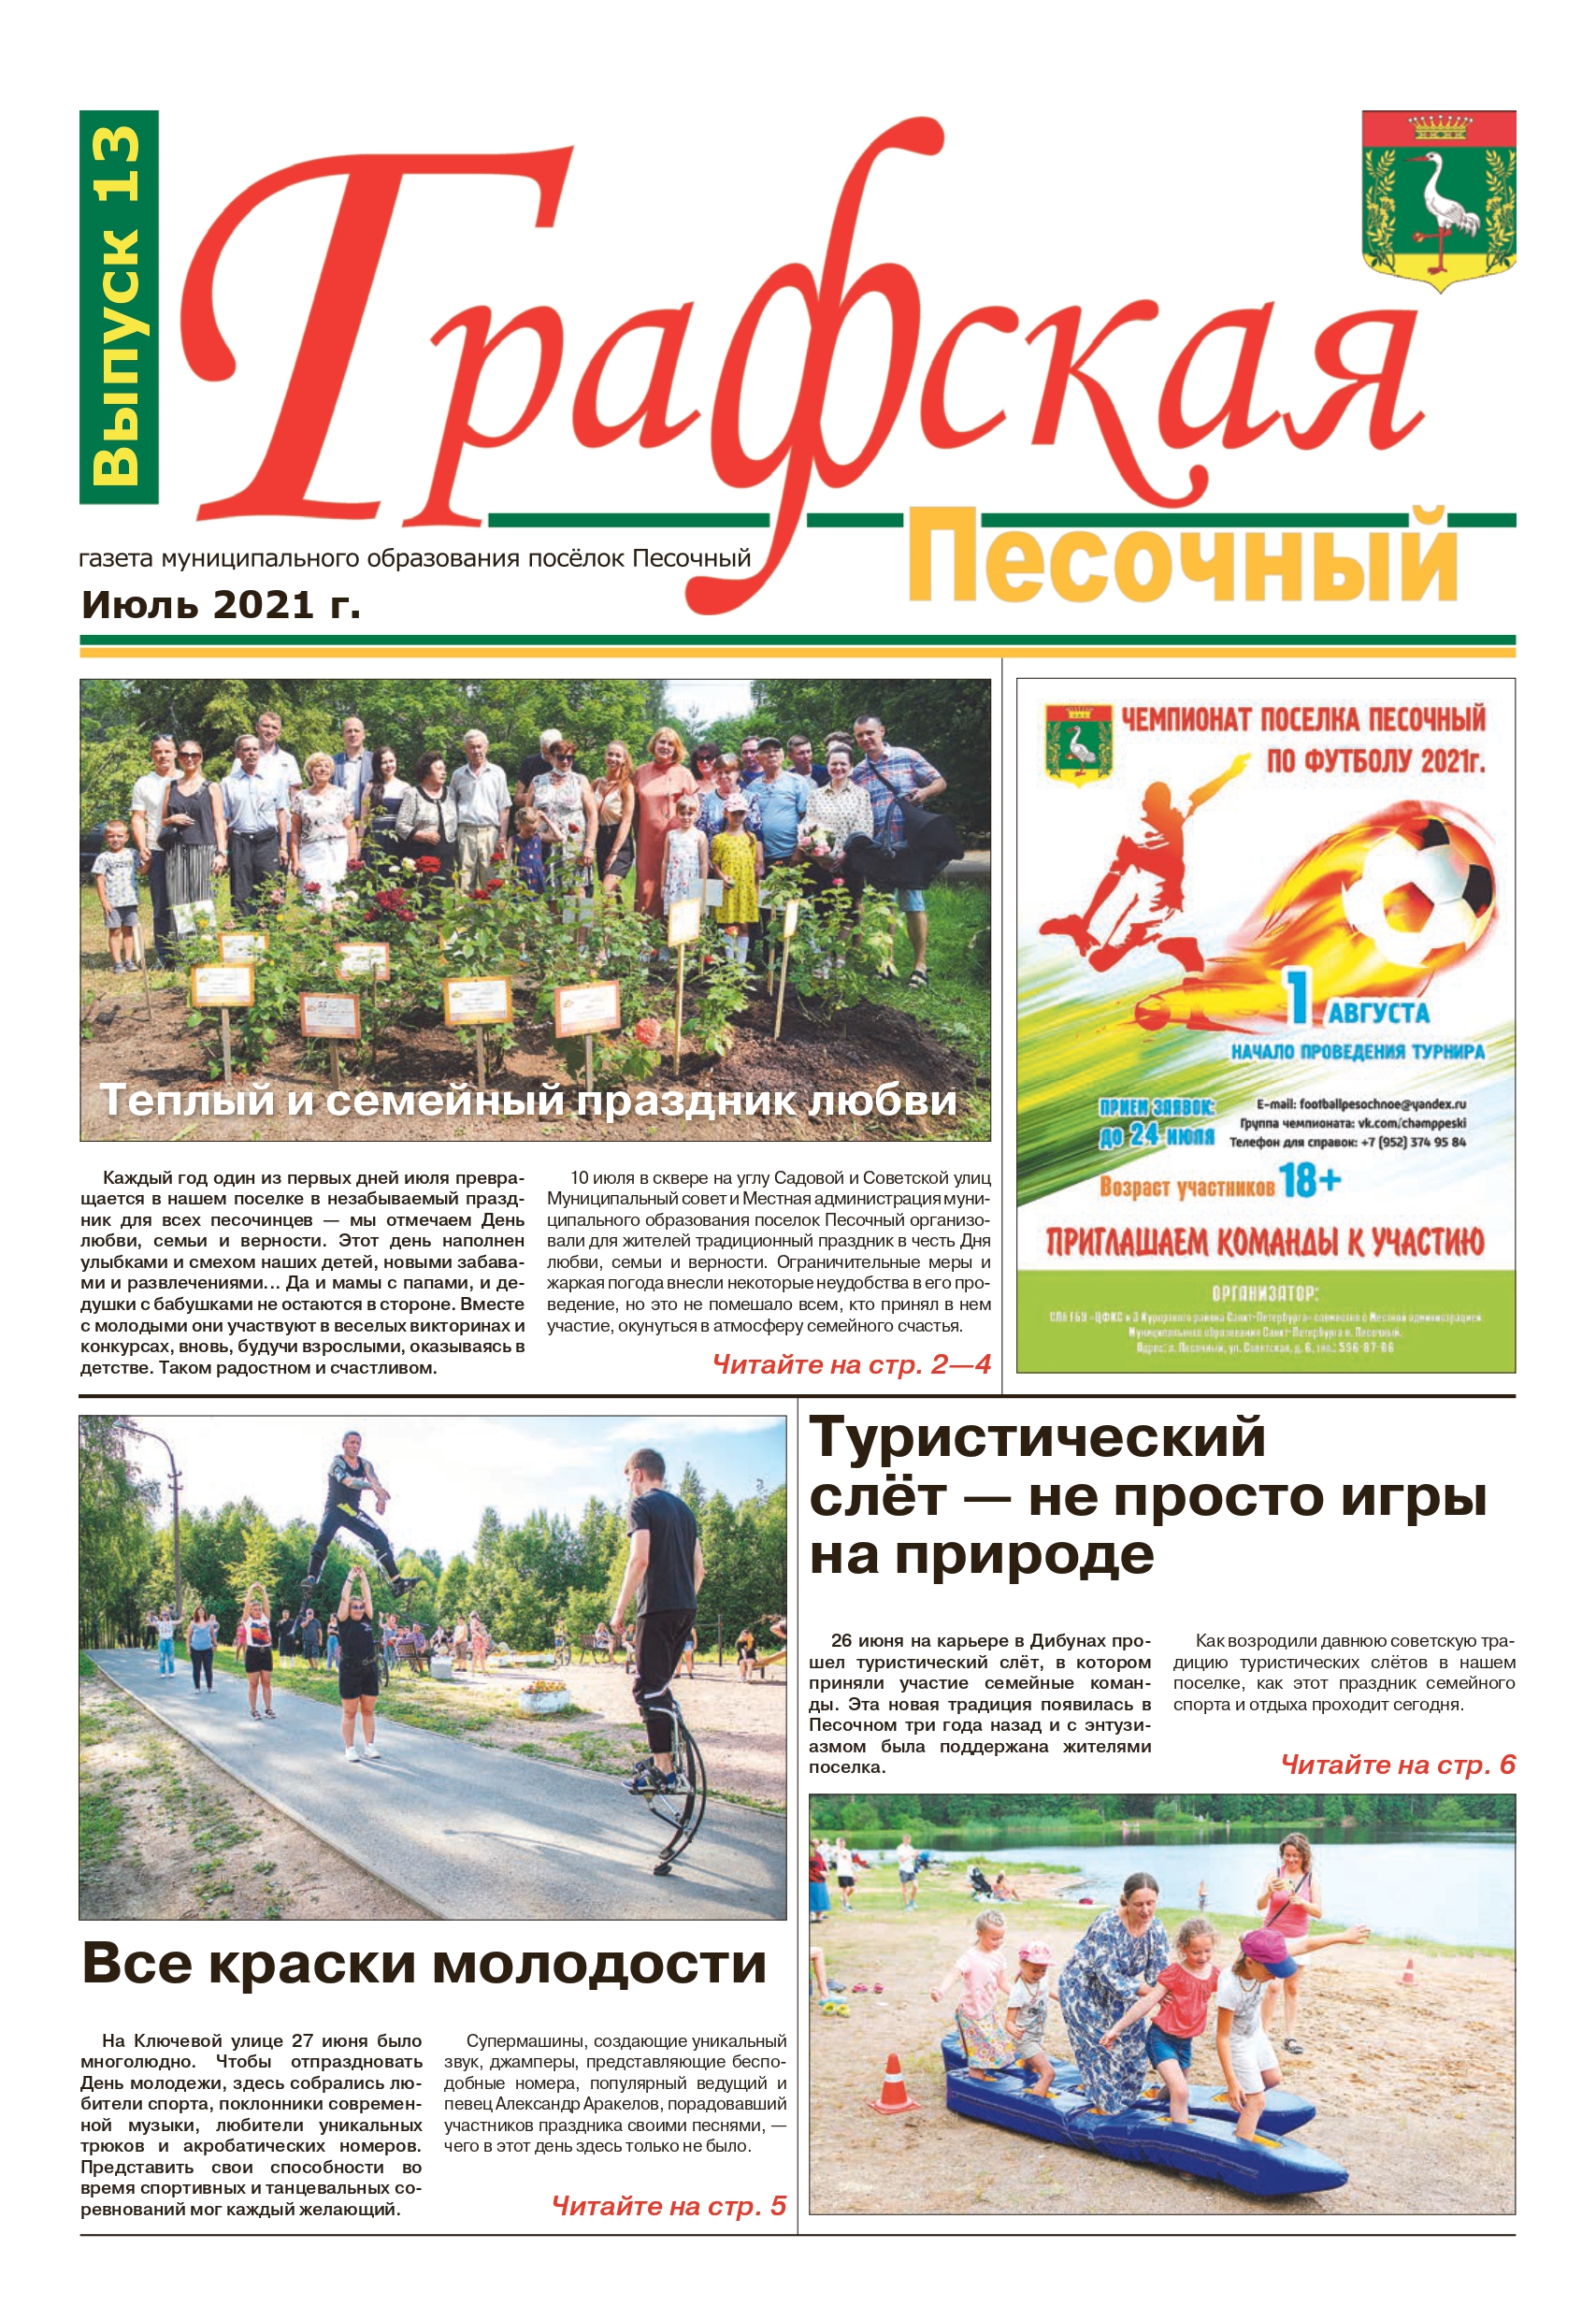 Газета "Графская" выпуск № 13, июль 2021